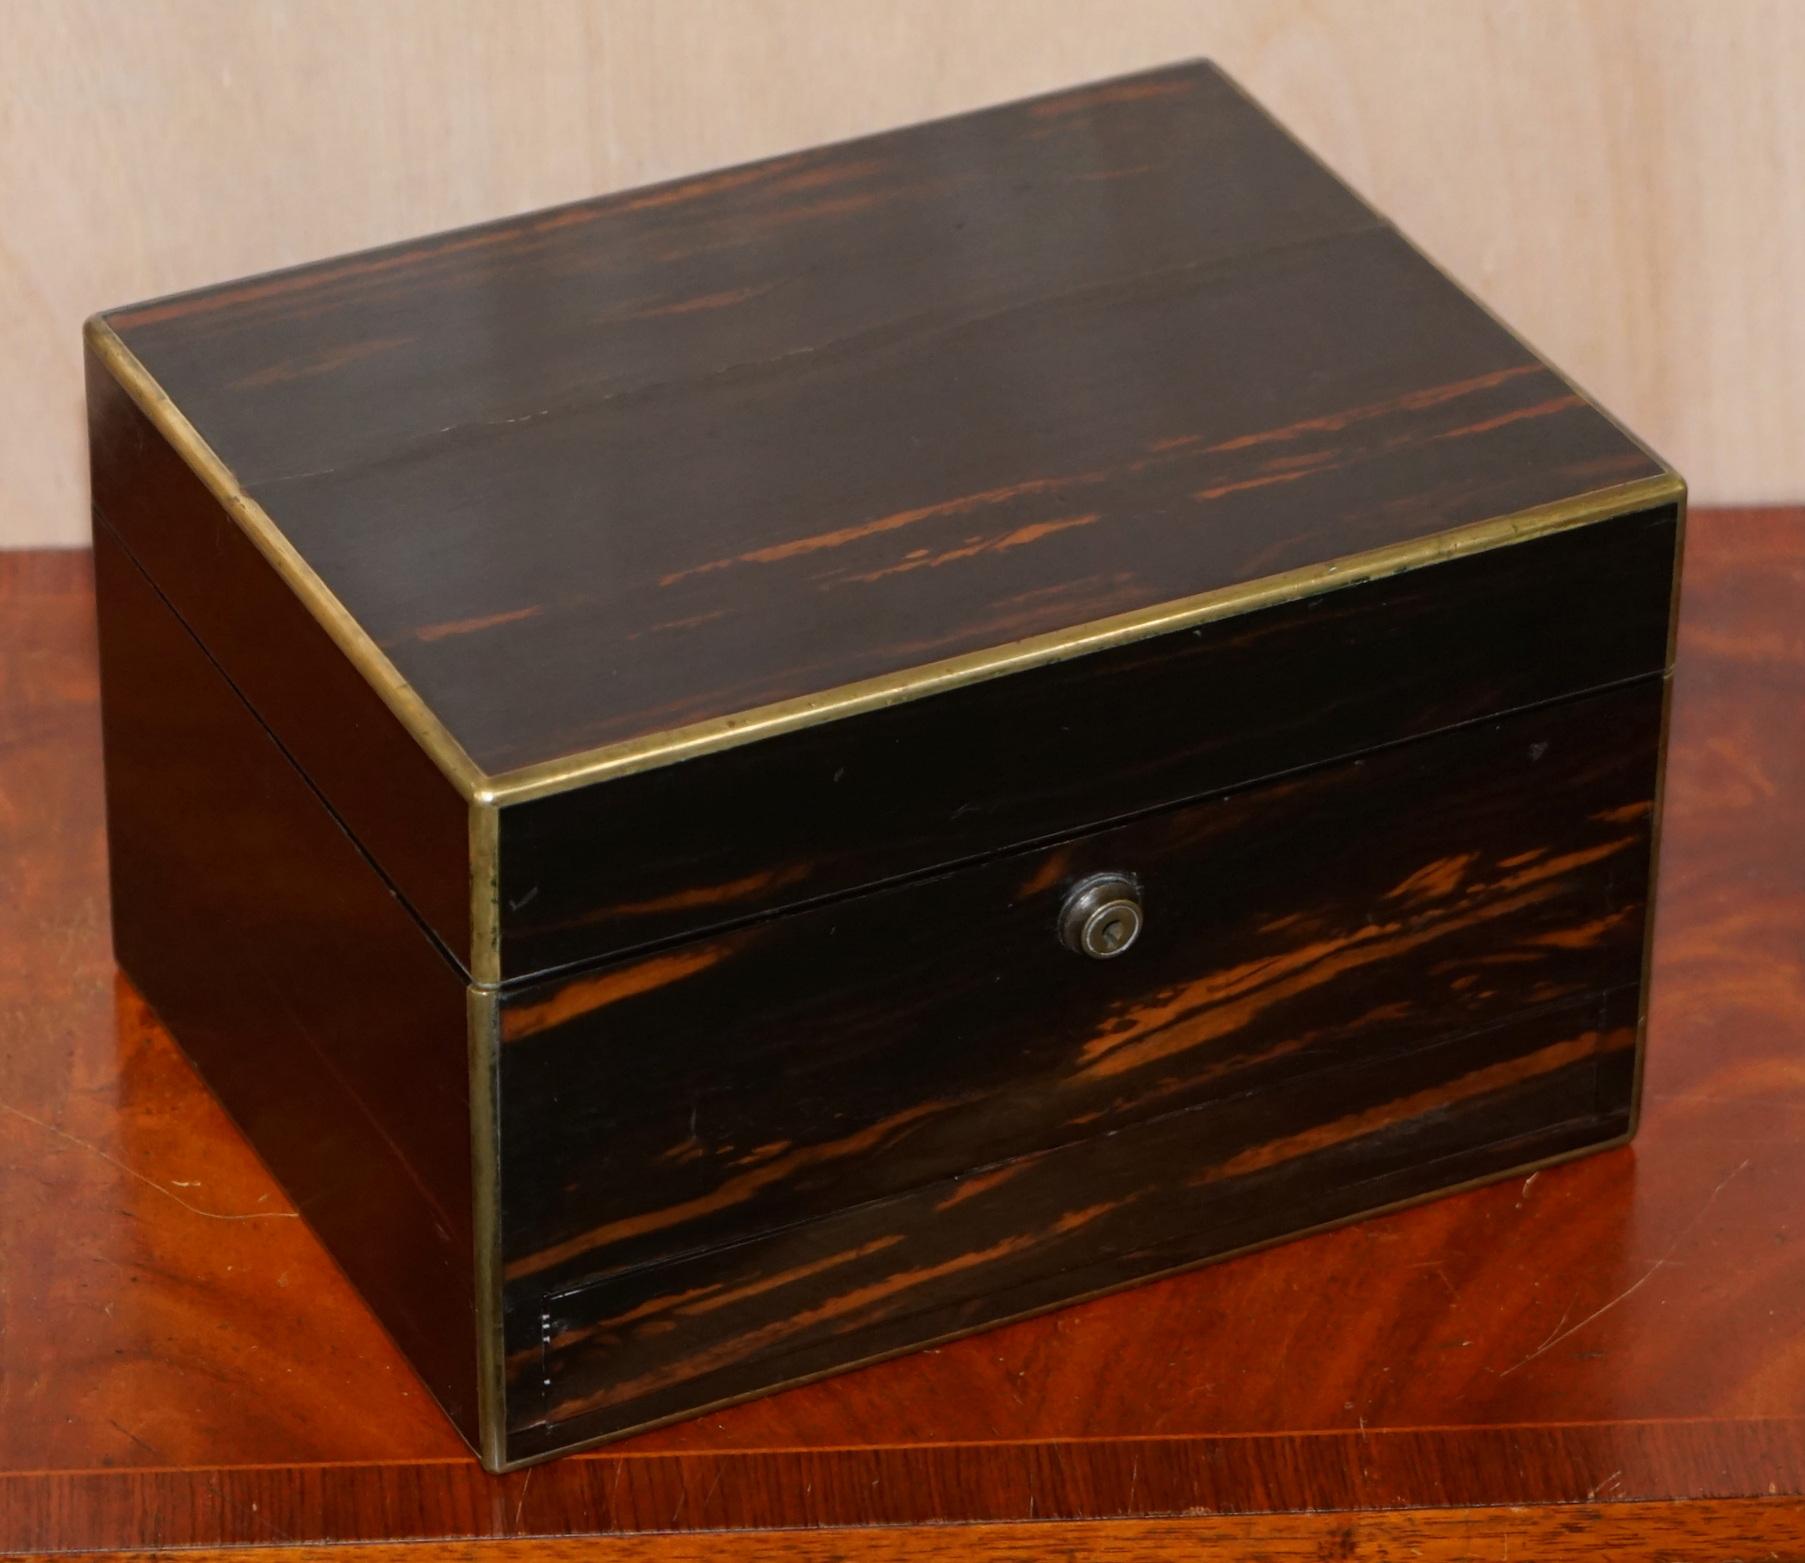 Wir freuen uns, diese sehr seltene 1867 Asprey 166 Bond Street London Coromandel Holz Eitelkeit Schminktisch Box gepunzt Sterling Silber zum Verkauf anbieten

Ein sehr seltenes und hochwertiges Sammlerstück, die Box ist aus massivem